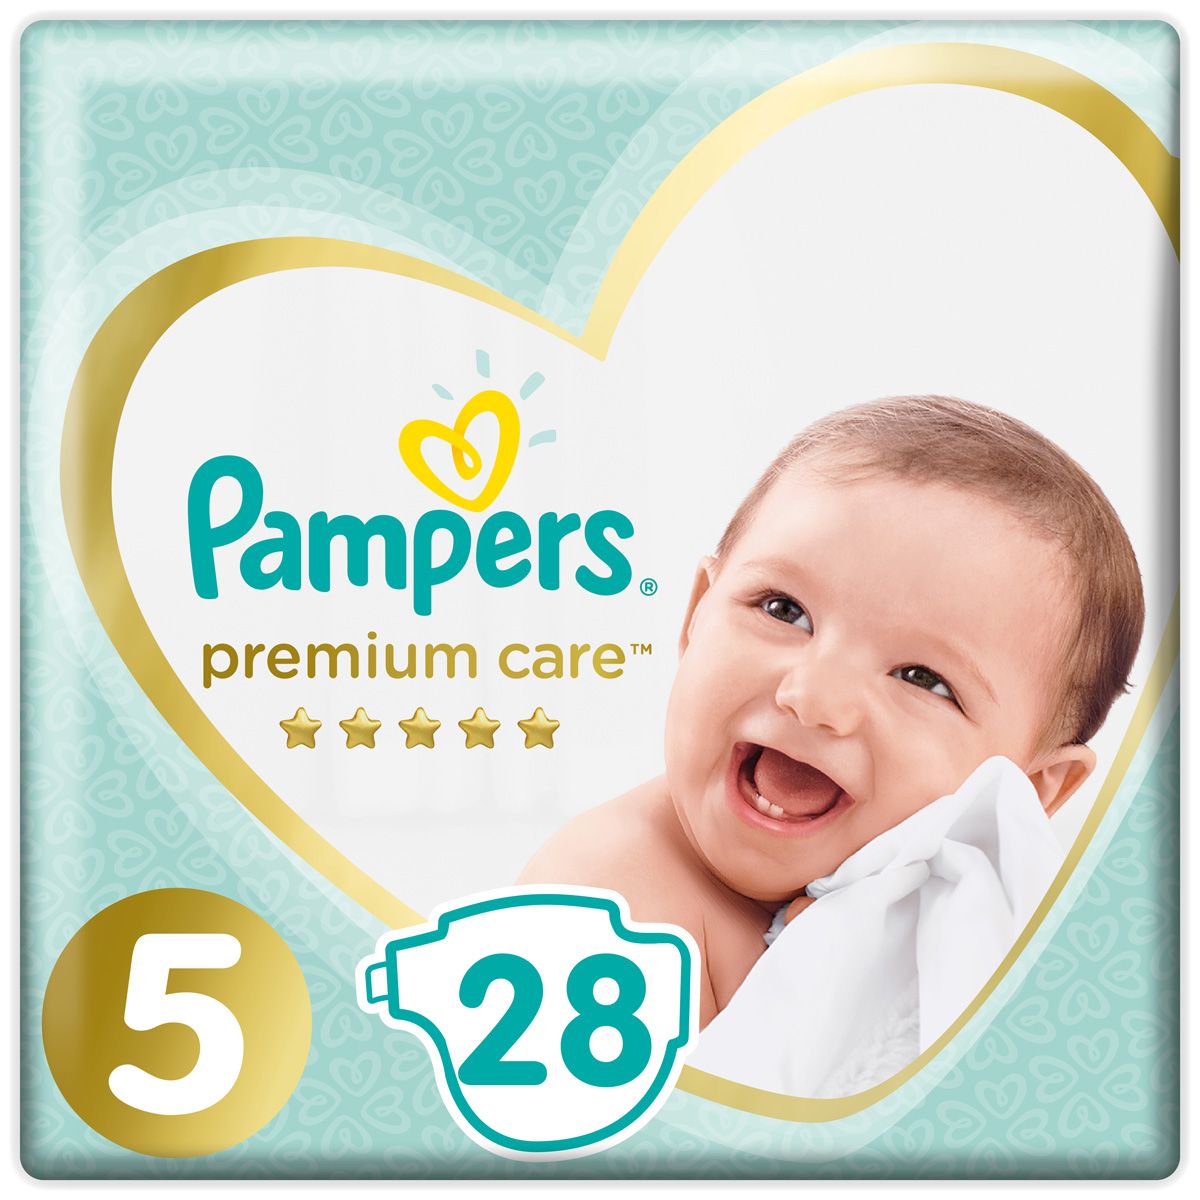 Pampers  Premium Care 11+  ( 5) 28 